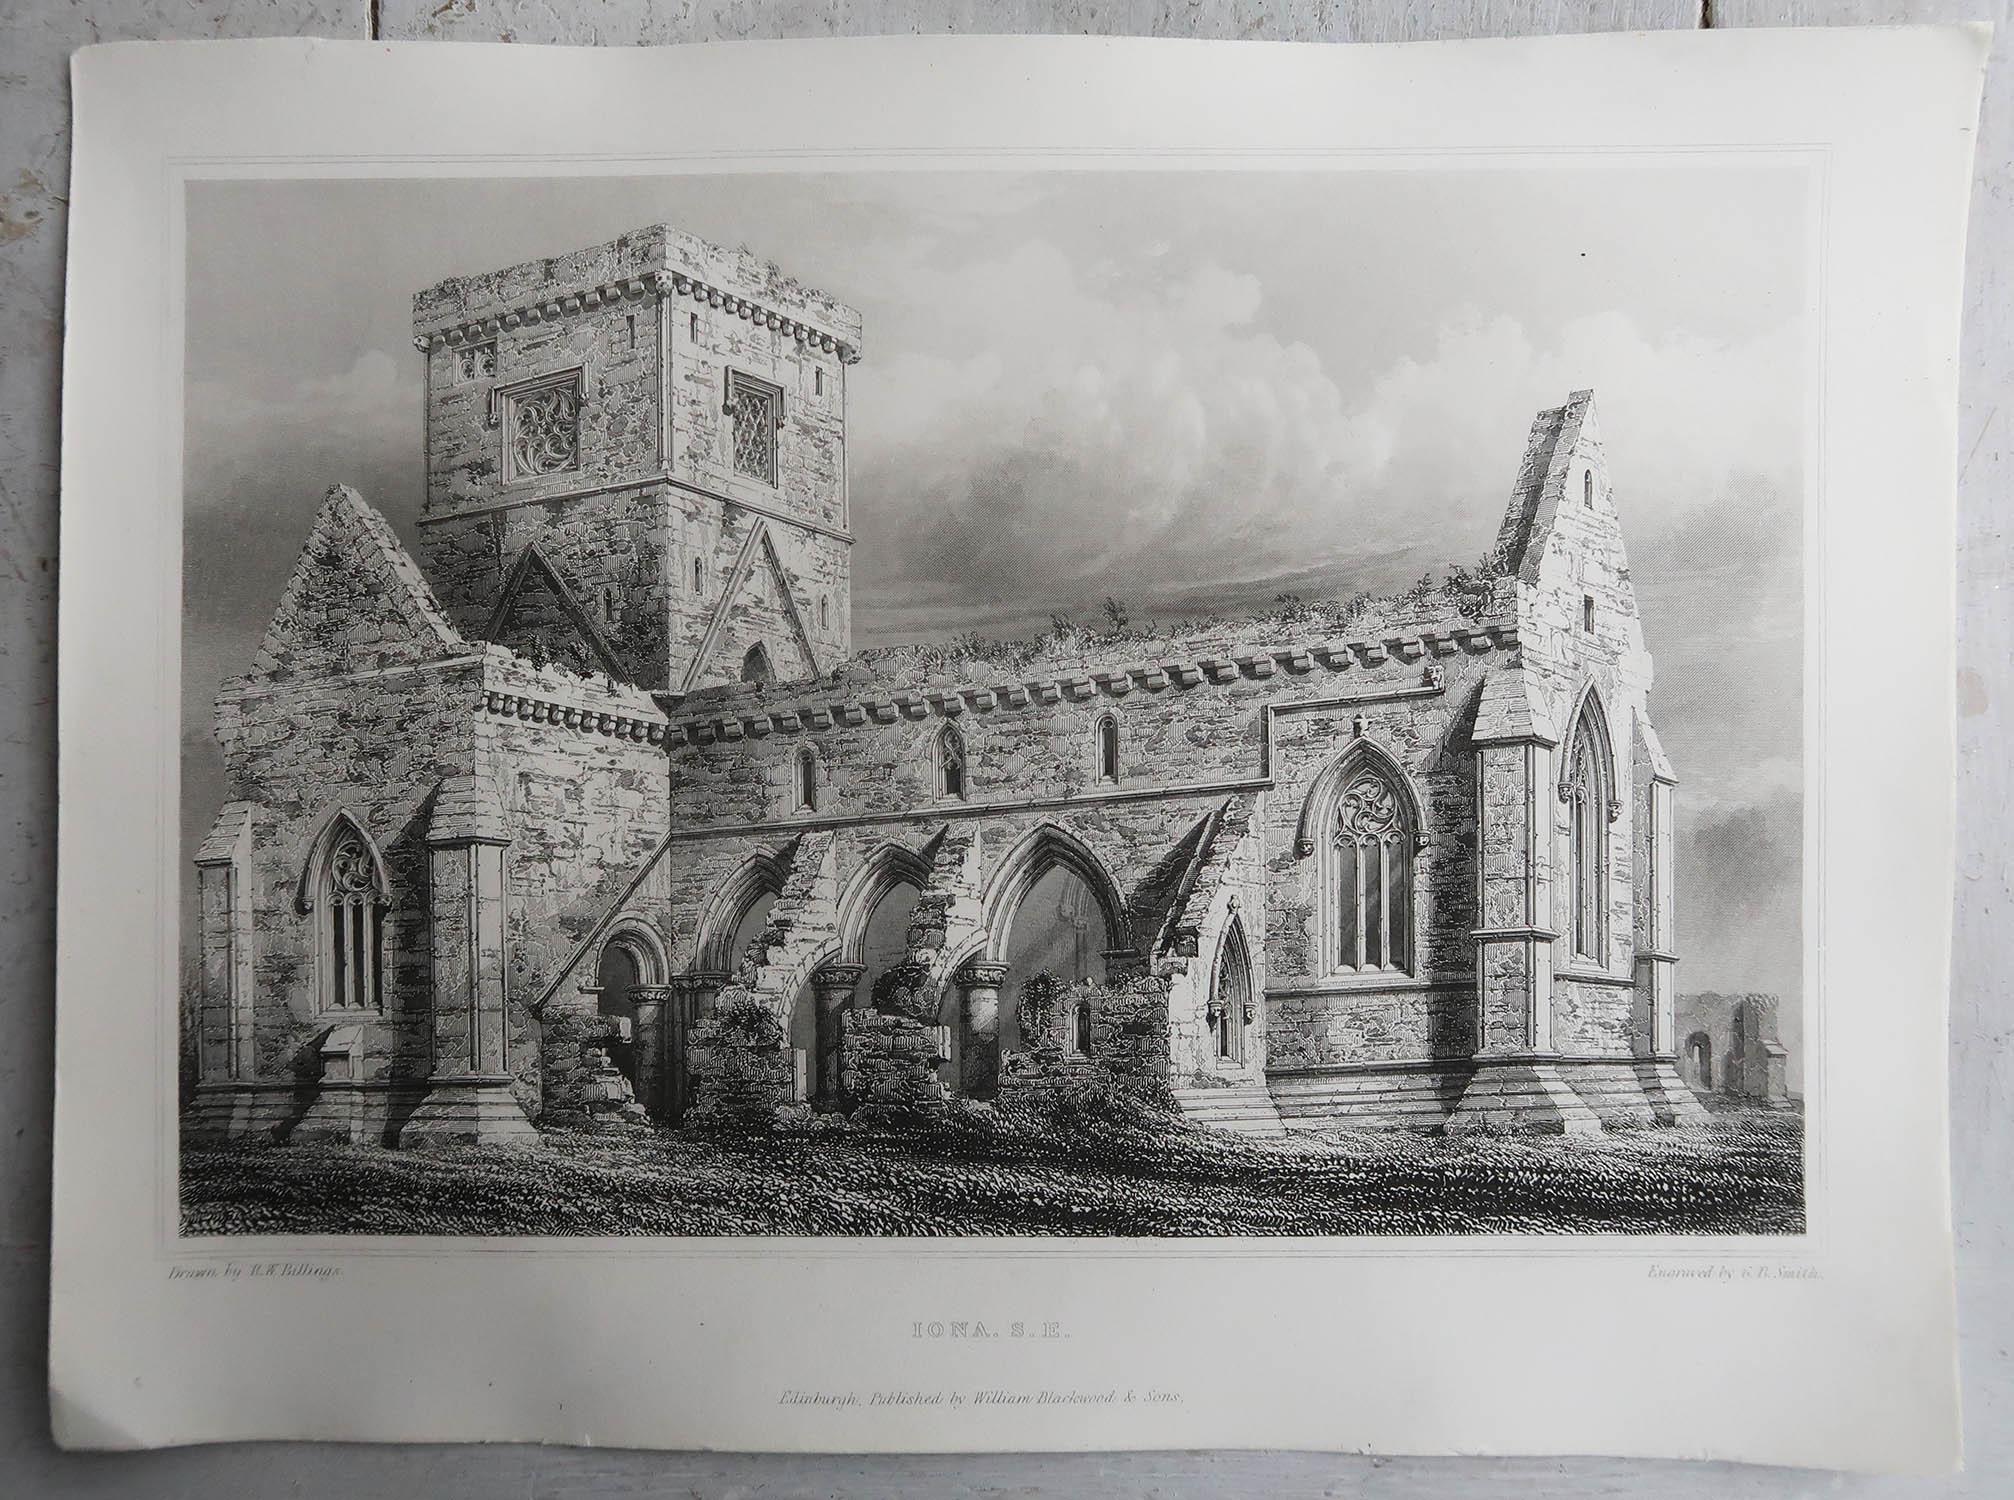 Magnifique série de 18 gravures de l'architecture gothique en Ecosse

Gravures sur acier. Après R.W. Billing

Publié par William Blackwood & Sons, Édimbourg. Daté de 1848

Non encadré.







